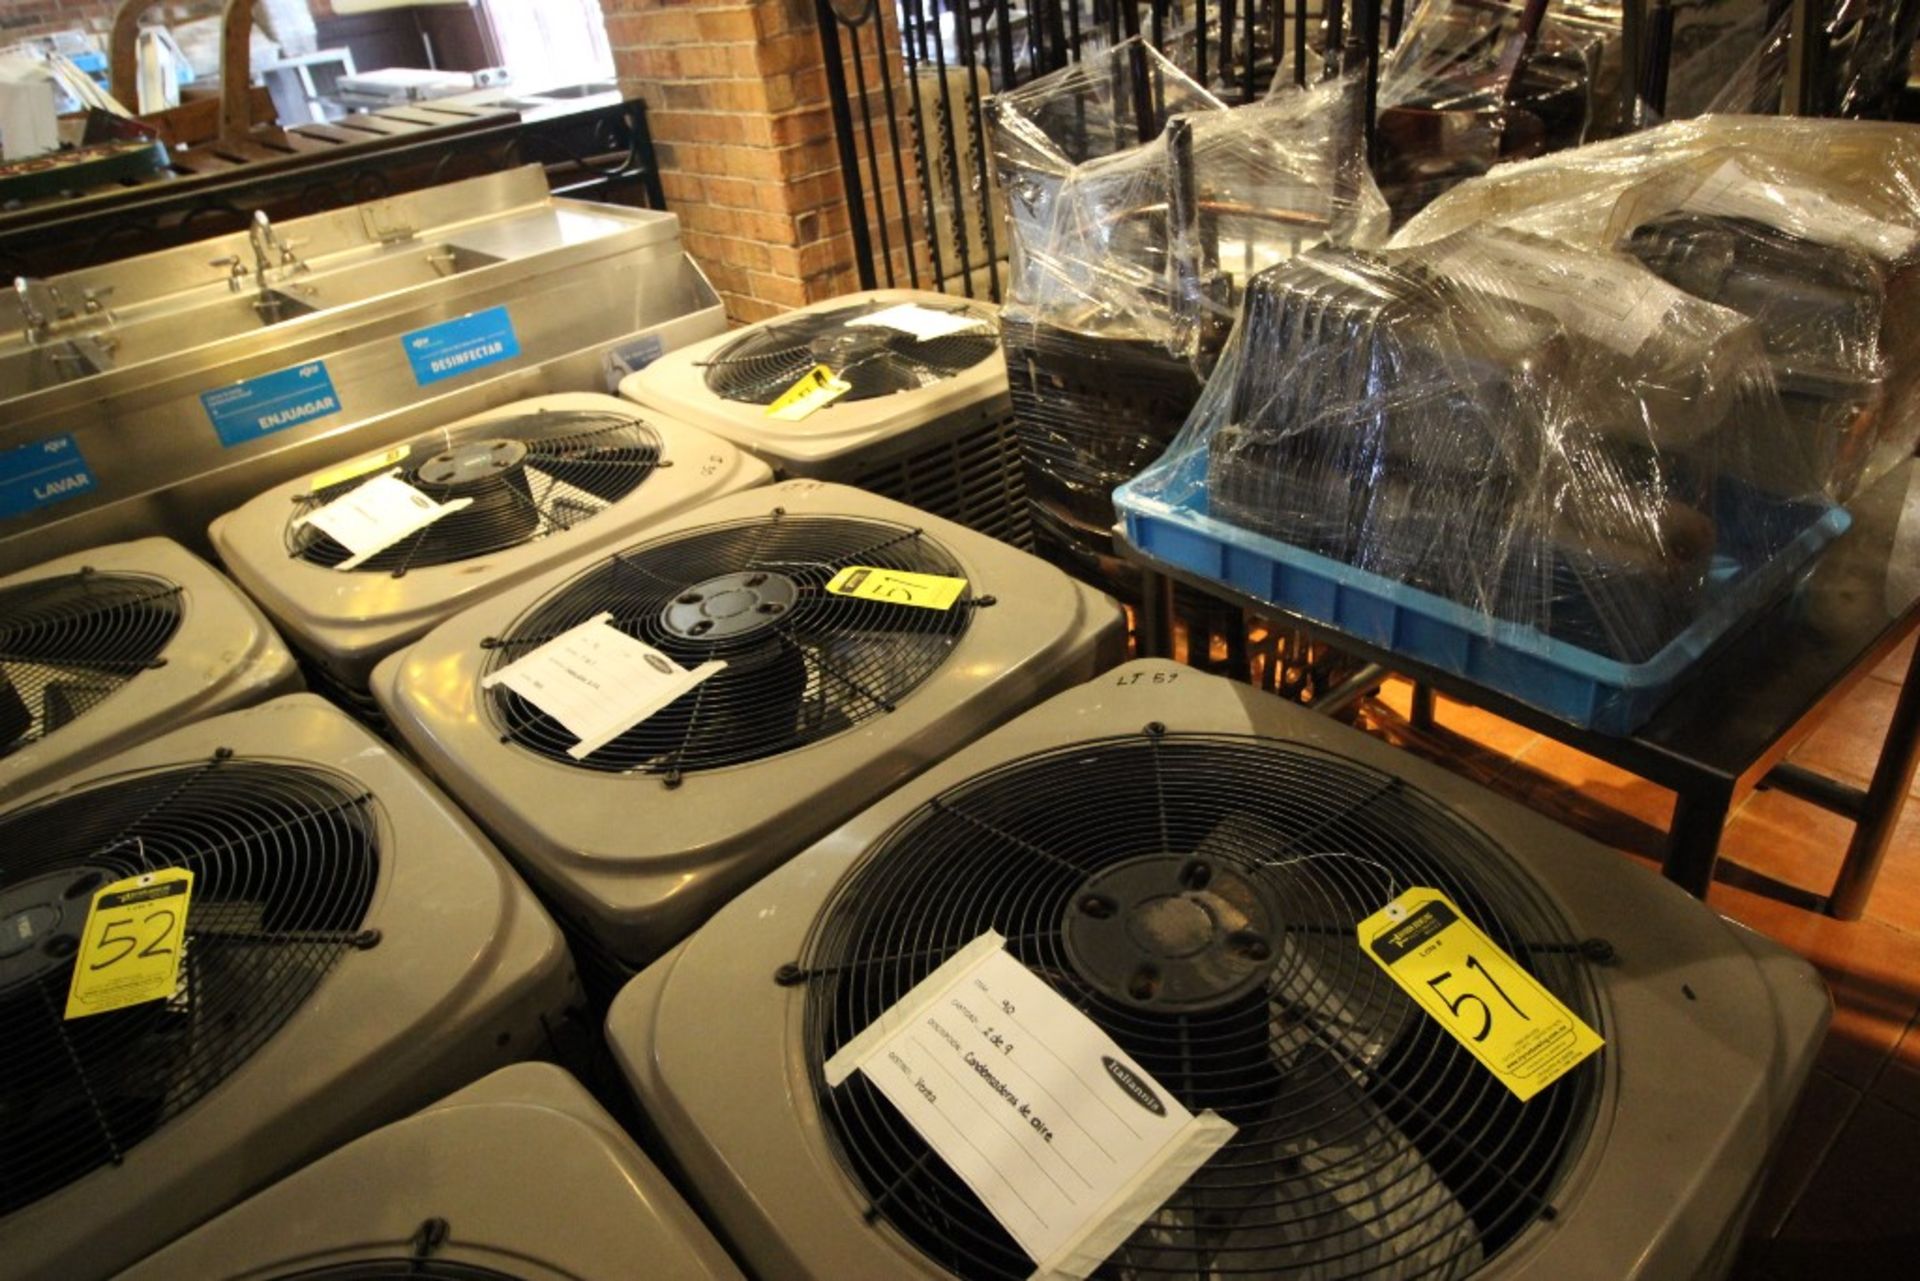 3 Unidades Condensadoras para aire acondicionado de un ventilador marca York, modelo:YCJD36S41S1A, - Image 4 of 6